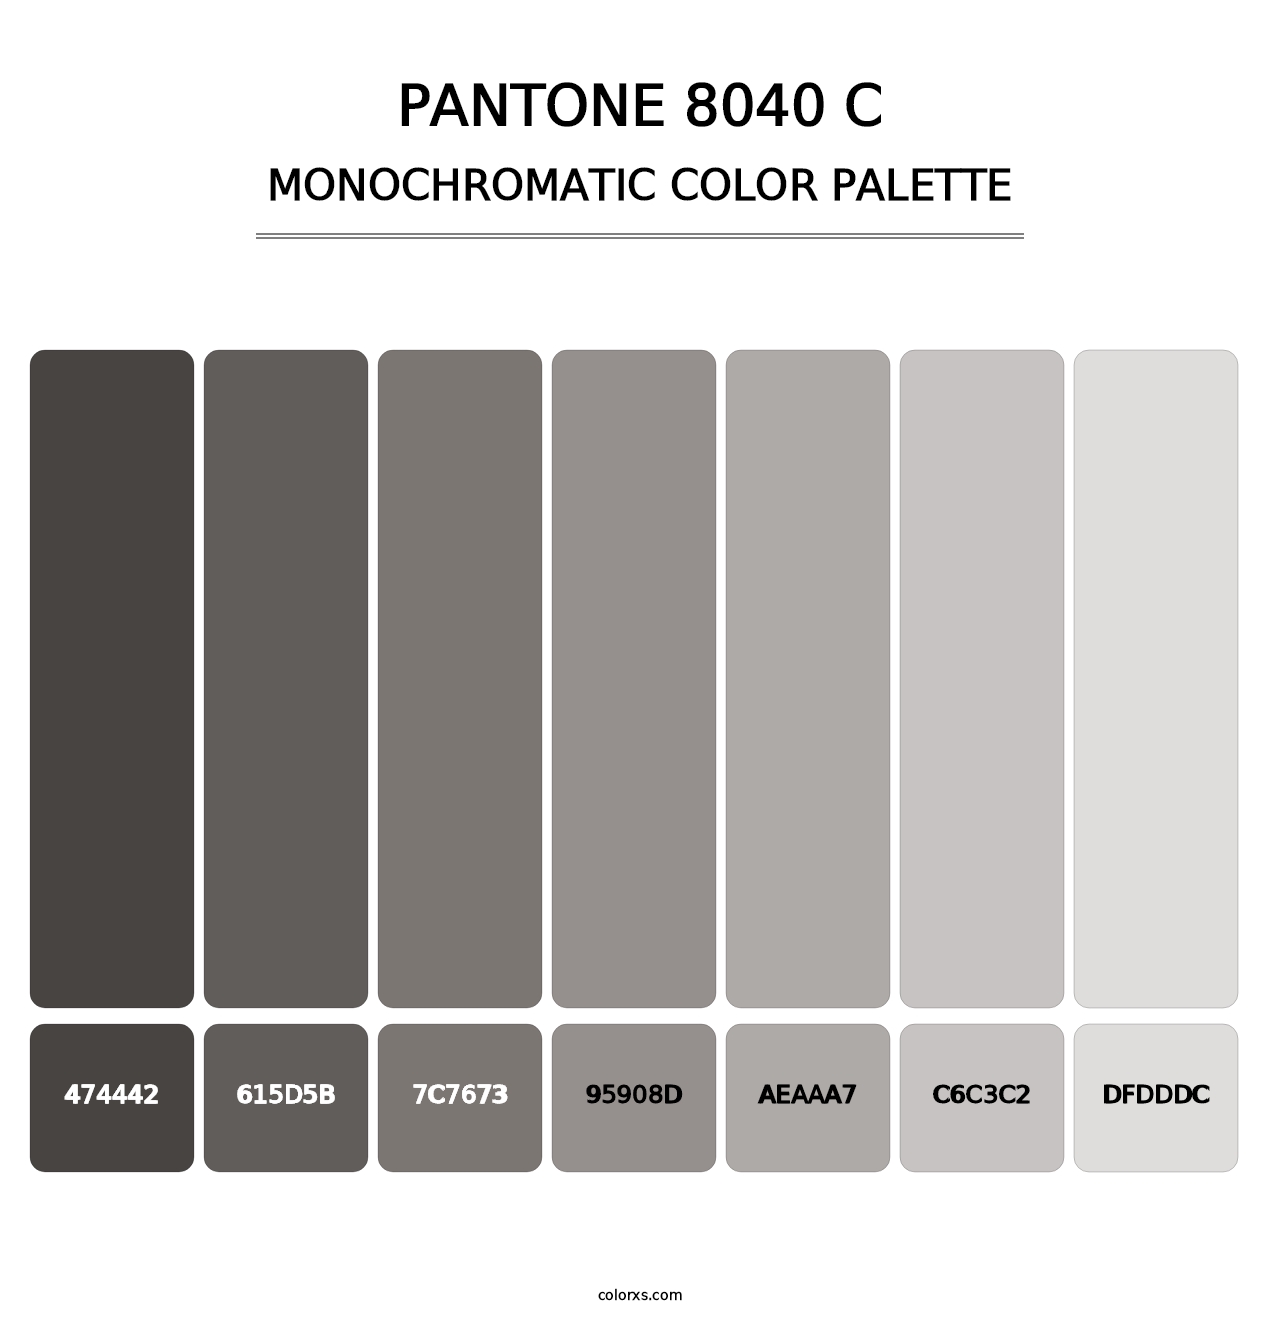 PANTONE 8040 C - Monochromatic Color Palette